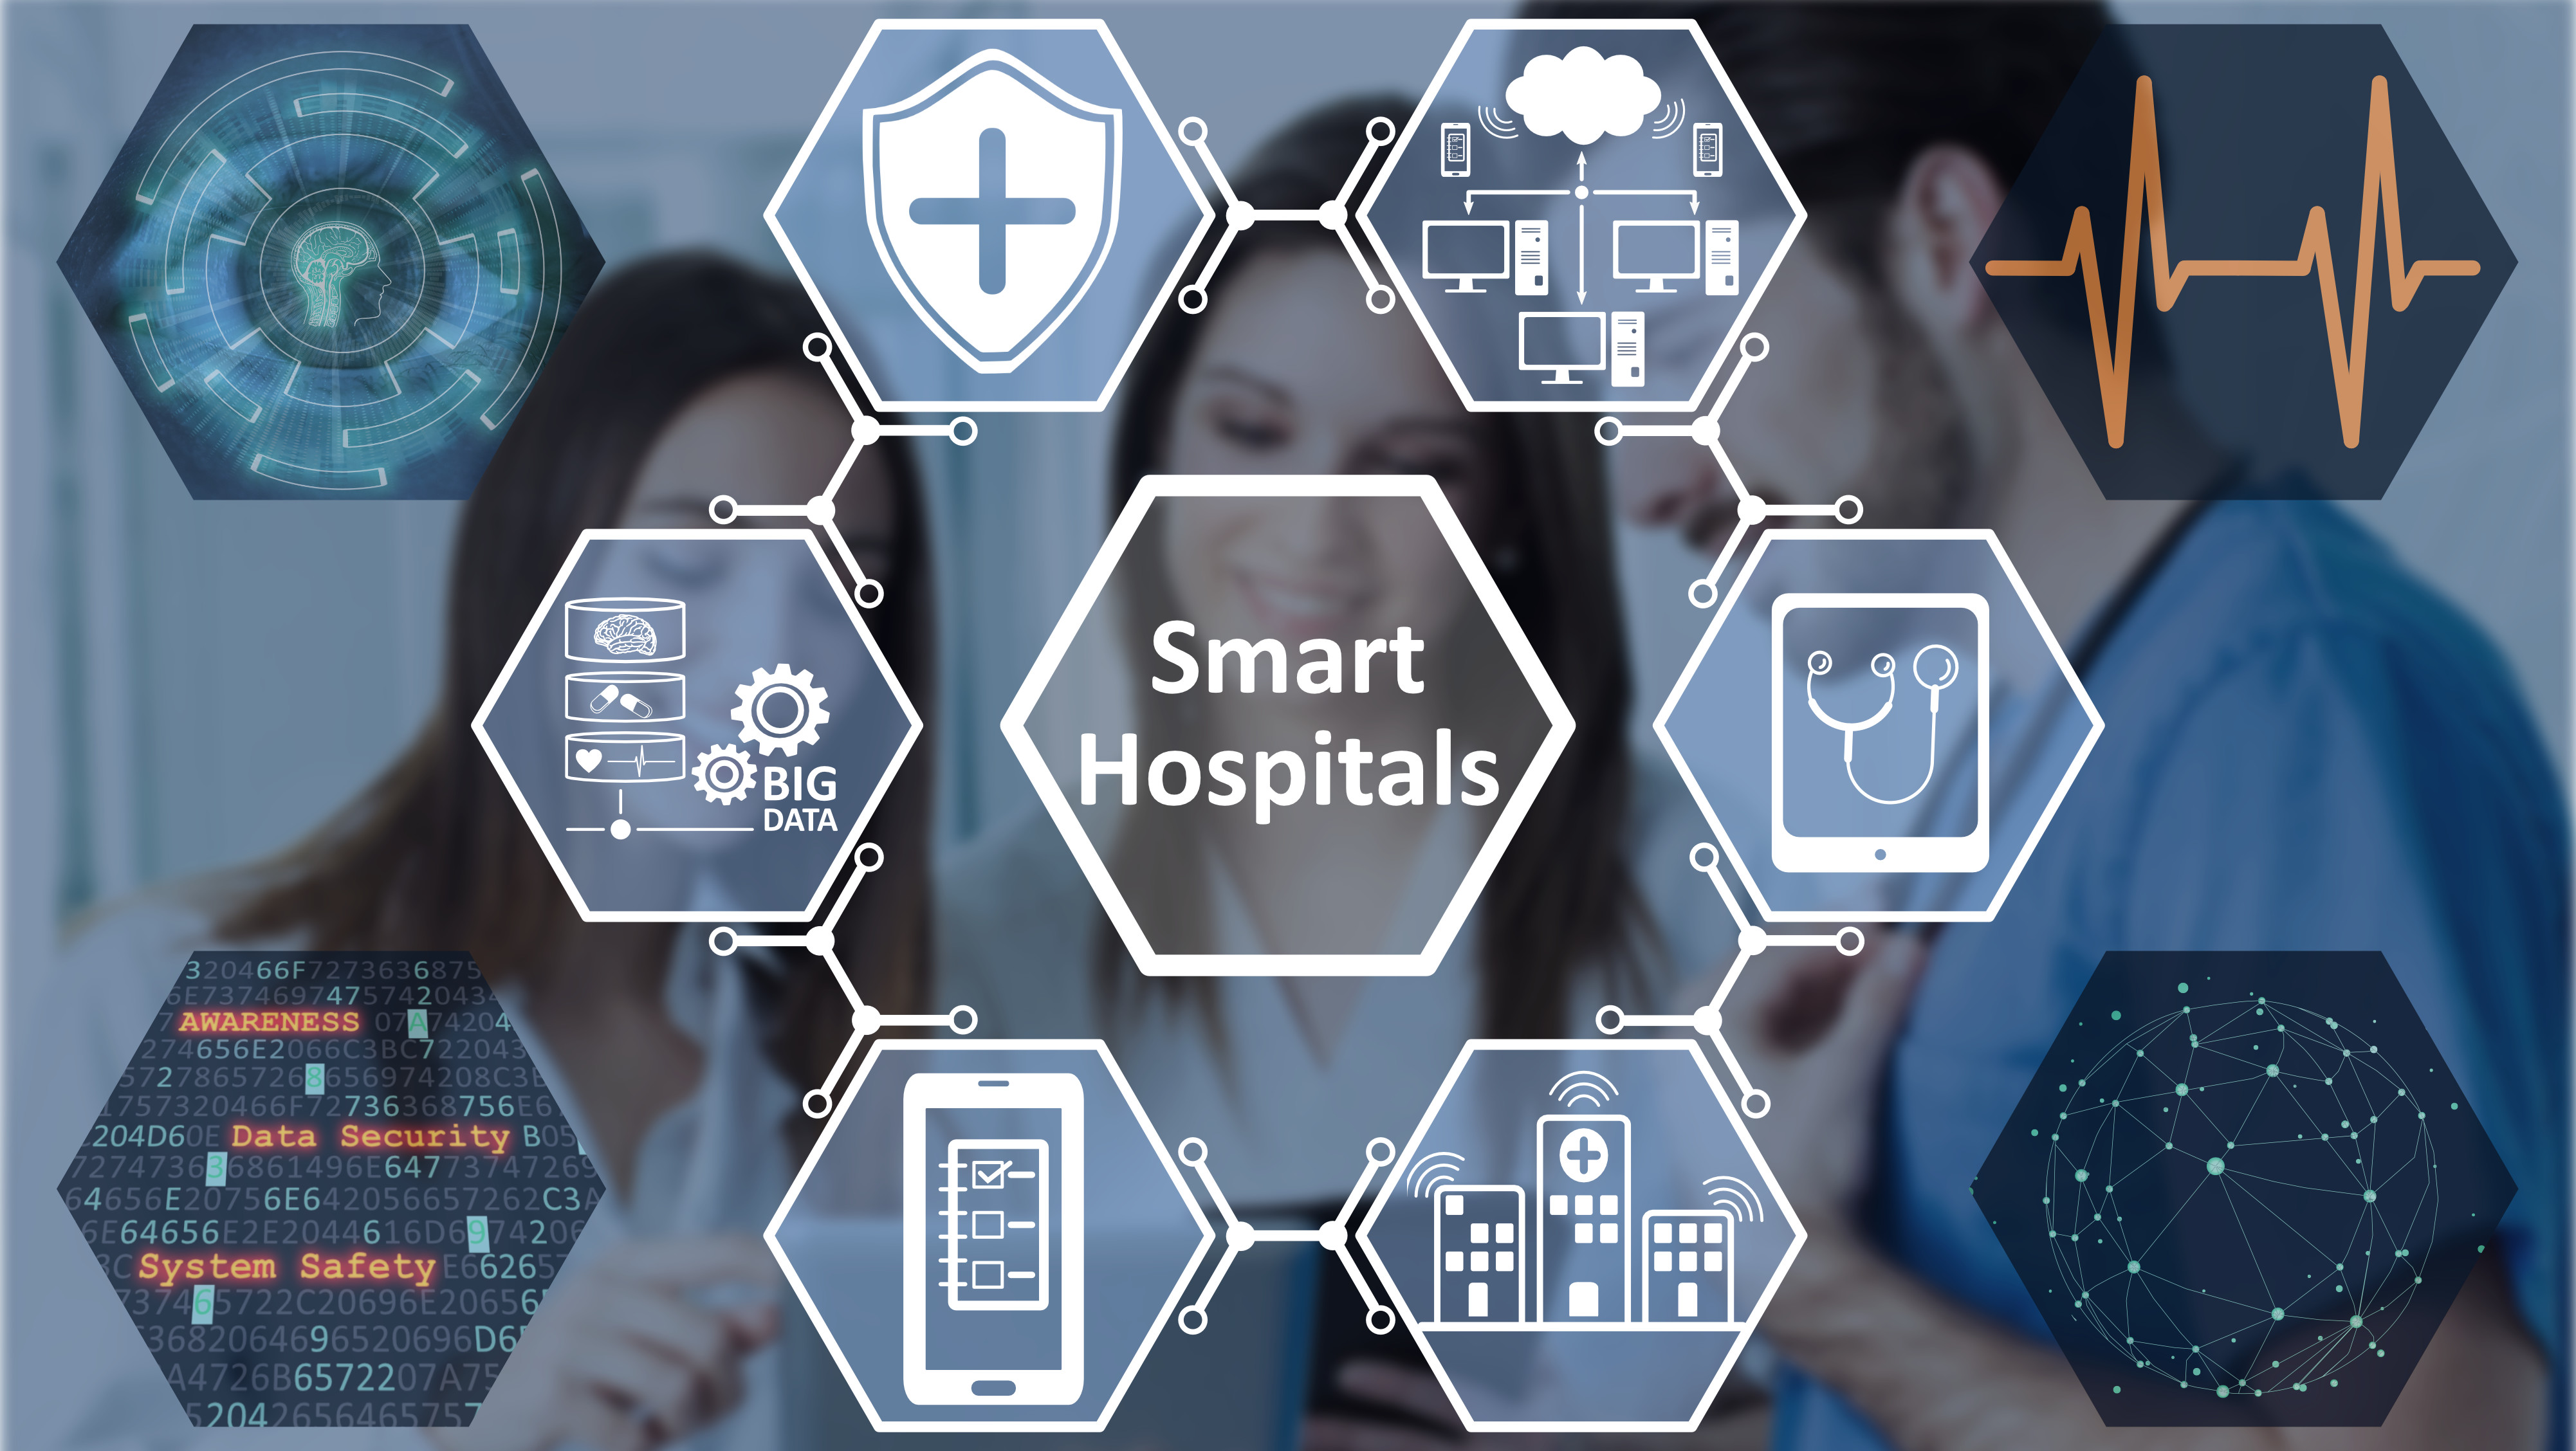 Smart Hospitals